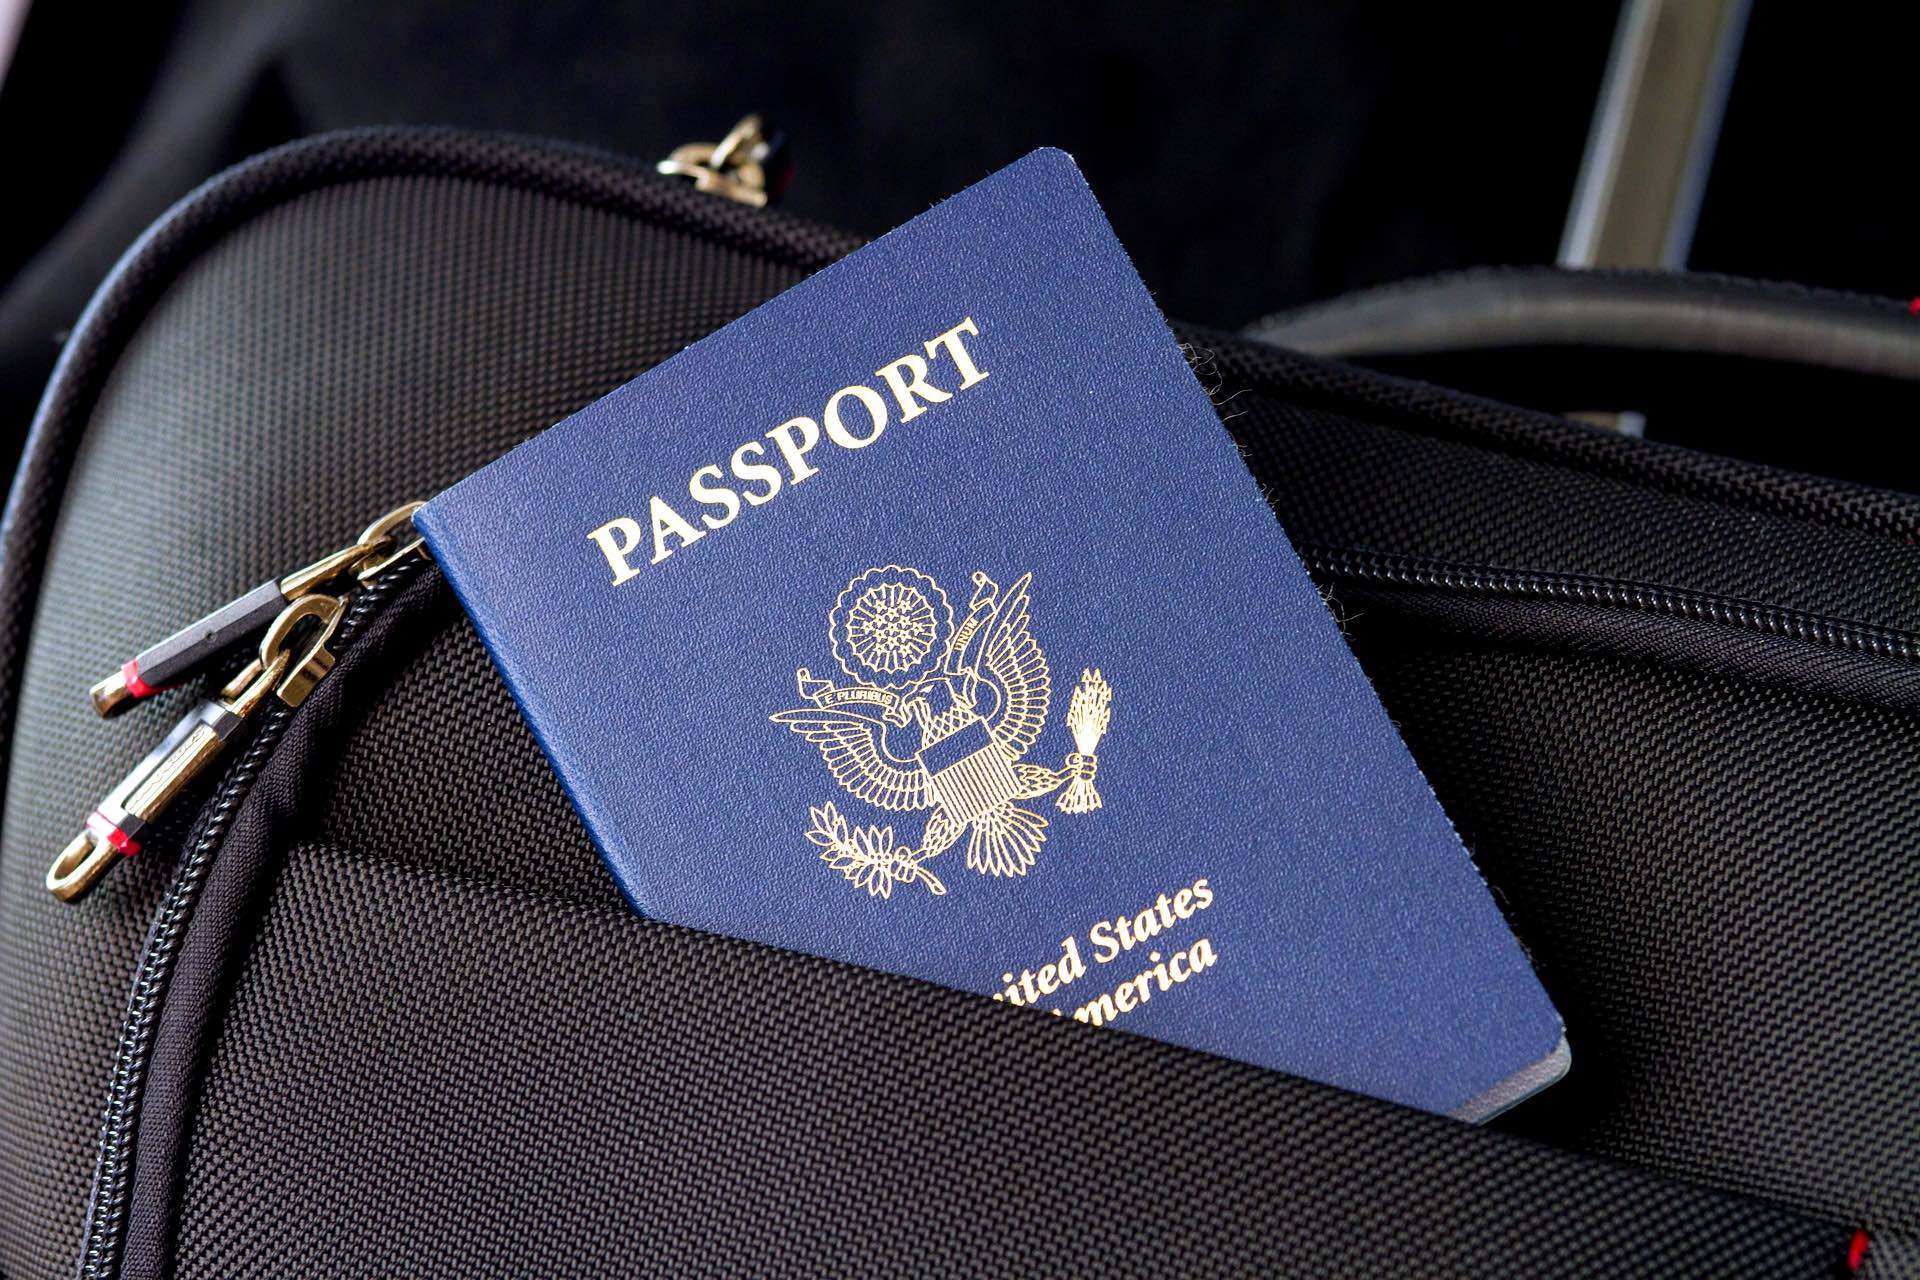 a passport in a black bag